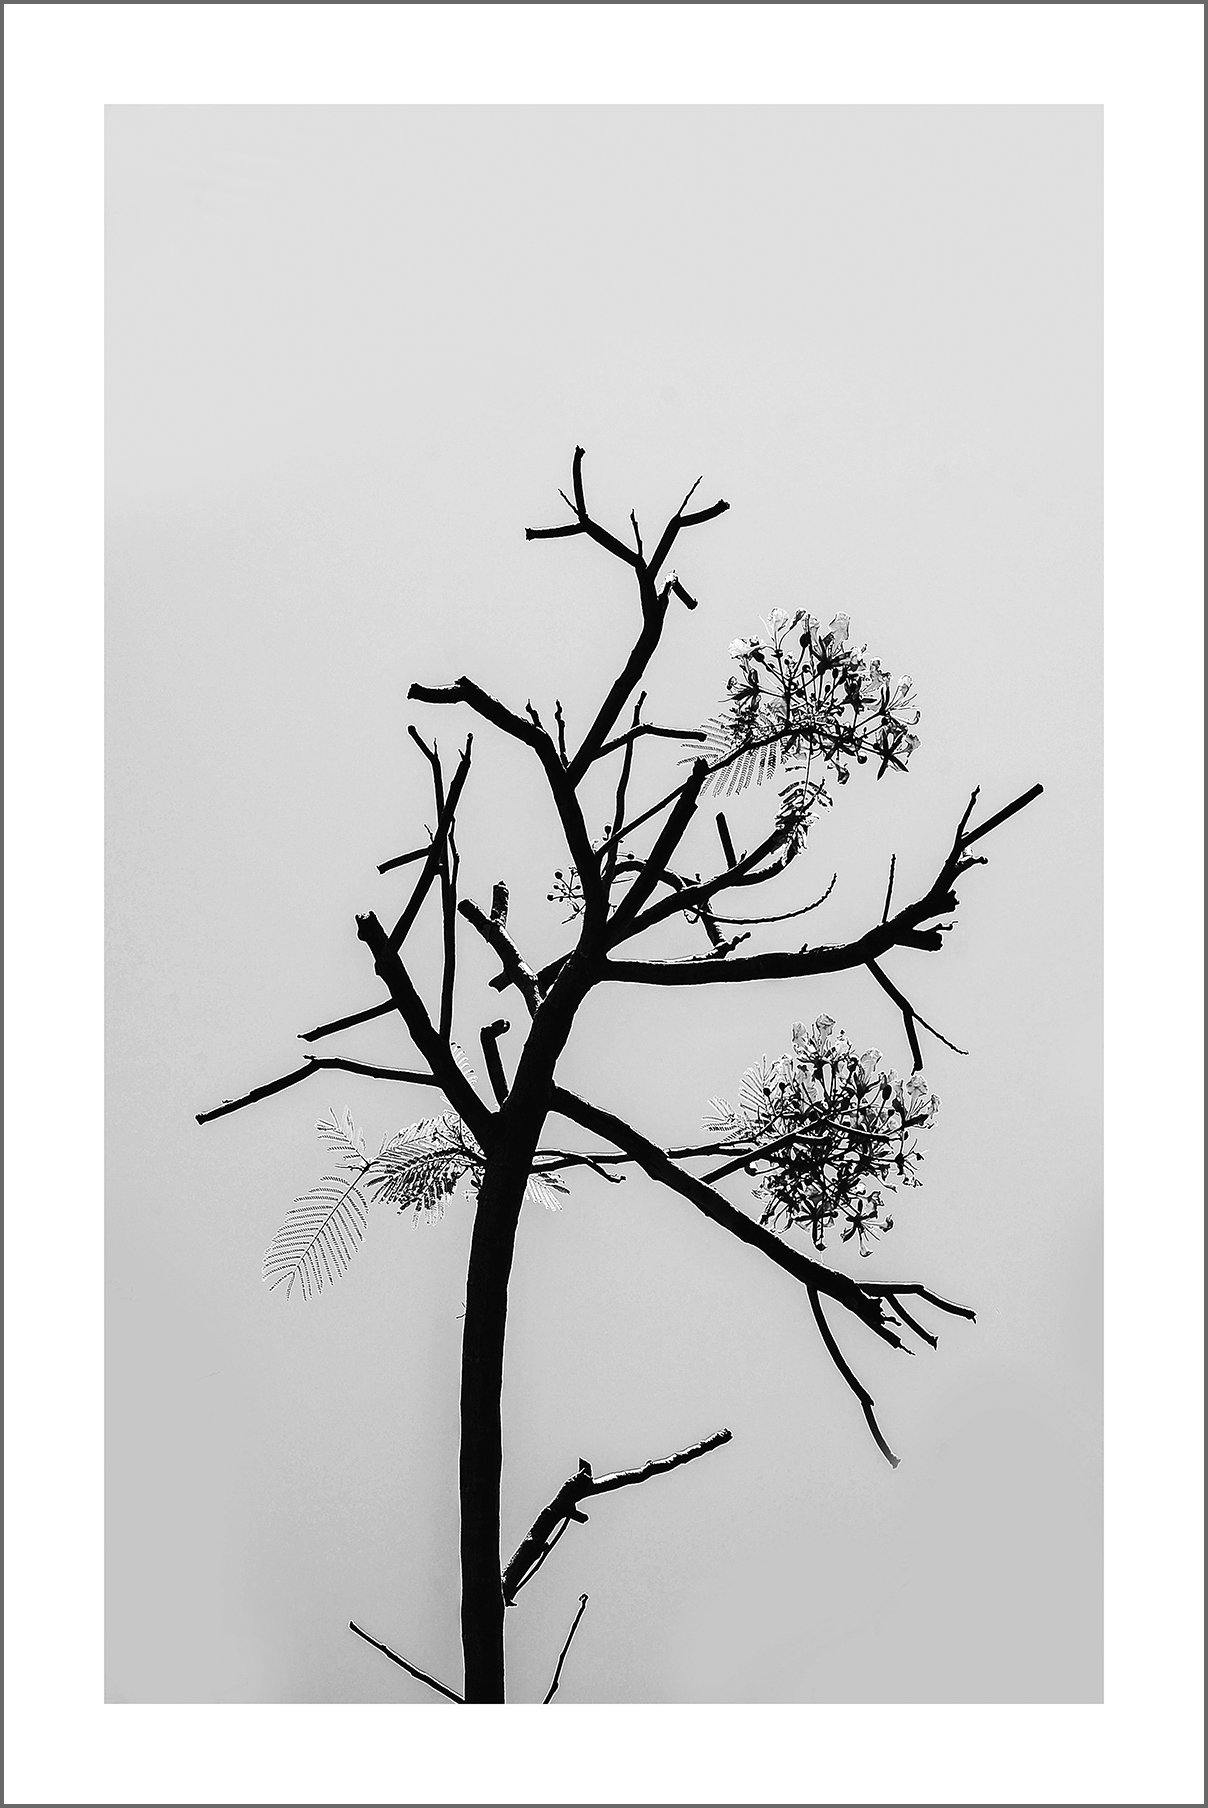 TREE BLOSSOM PRINT: Minimalist Black and White Nature Art - Pimlico Prints